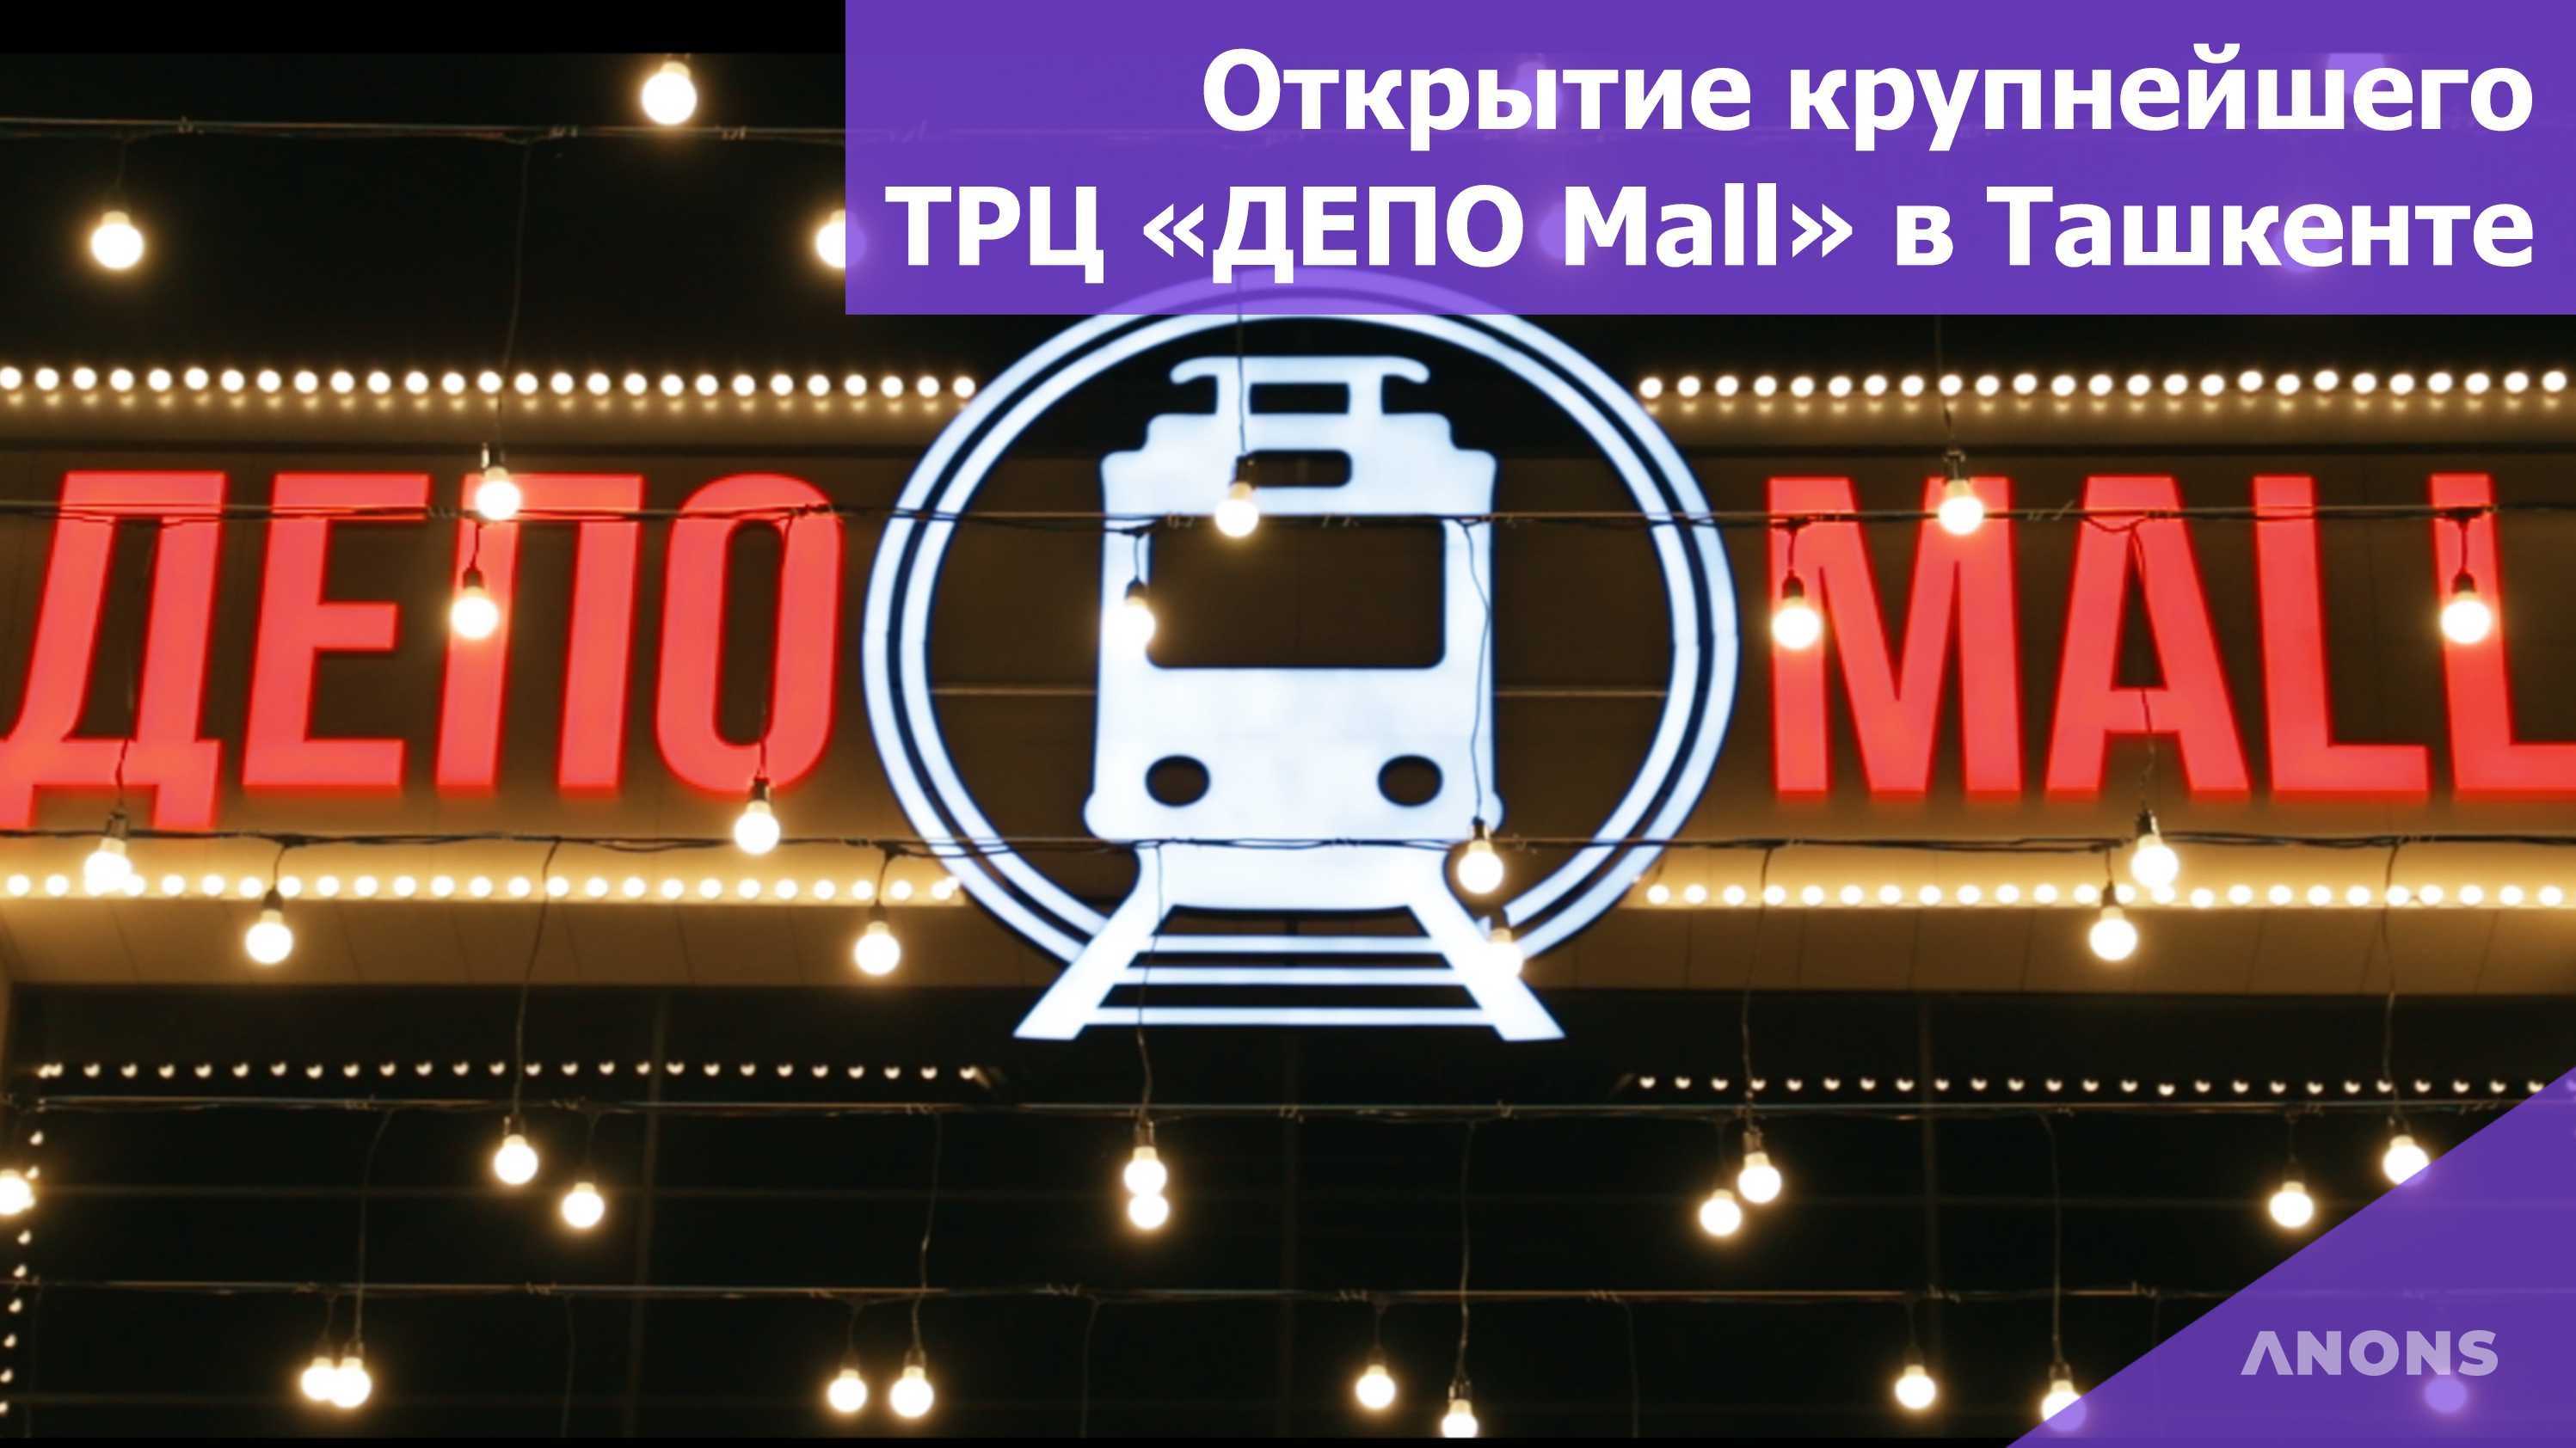 Открытие крупнейшего ТРЦ «Депо Mall» в Ташкенте — видеорепортаж